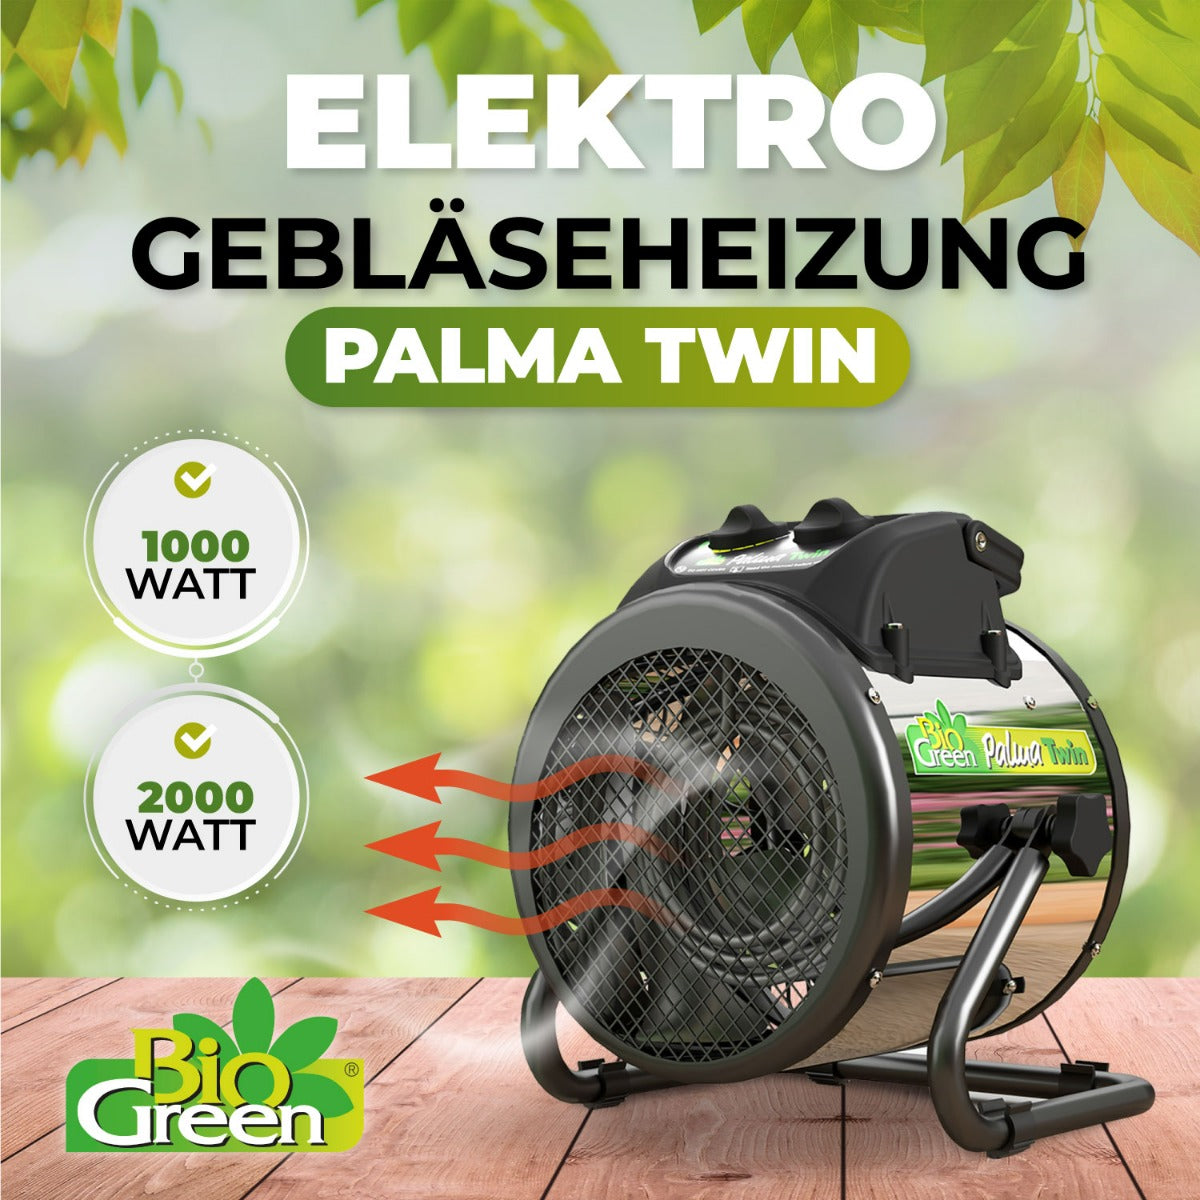 Bio Green Heizlüfter / Elektro-Gebläse-Heizung Palma Twin mit manuellem Thermostat mit zwei Heiz-Stufen